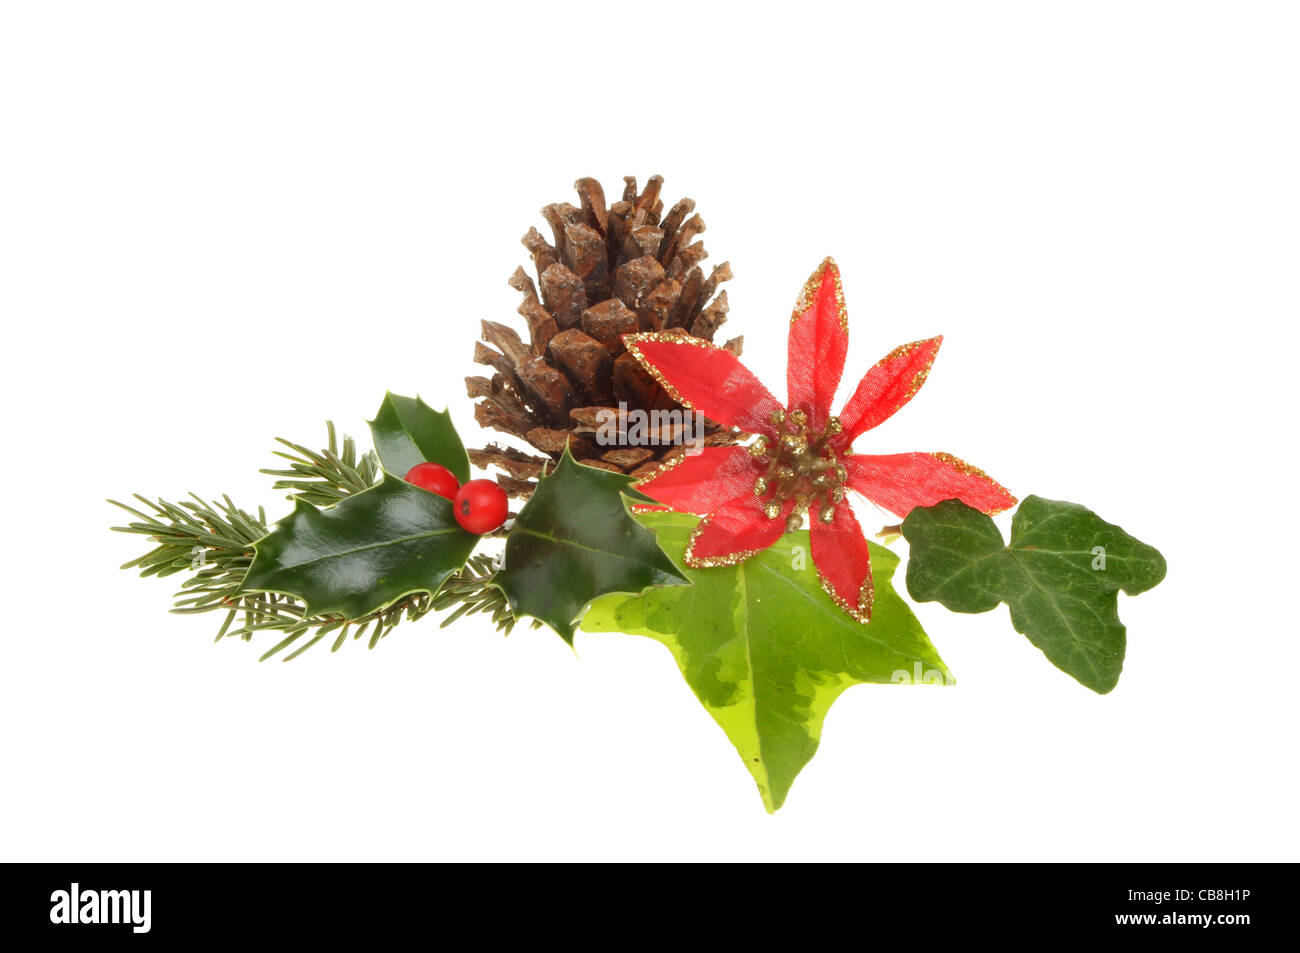 Le feuillage de saison de Noël, le houx, le lierre, les aiguilles de pin, pomme de pin et un rouge et or artificiel flower isolated on white Banque D'Images